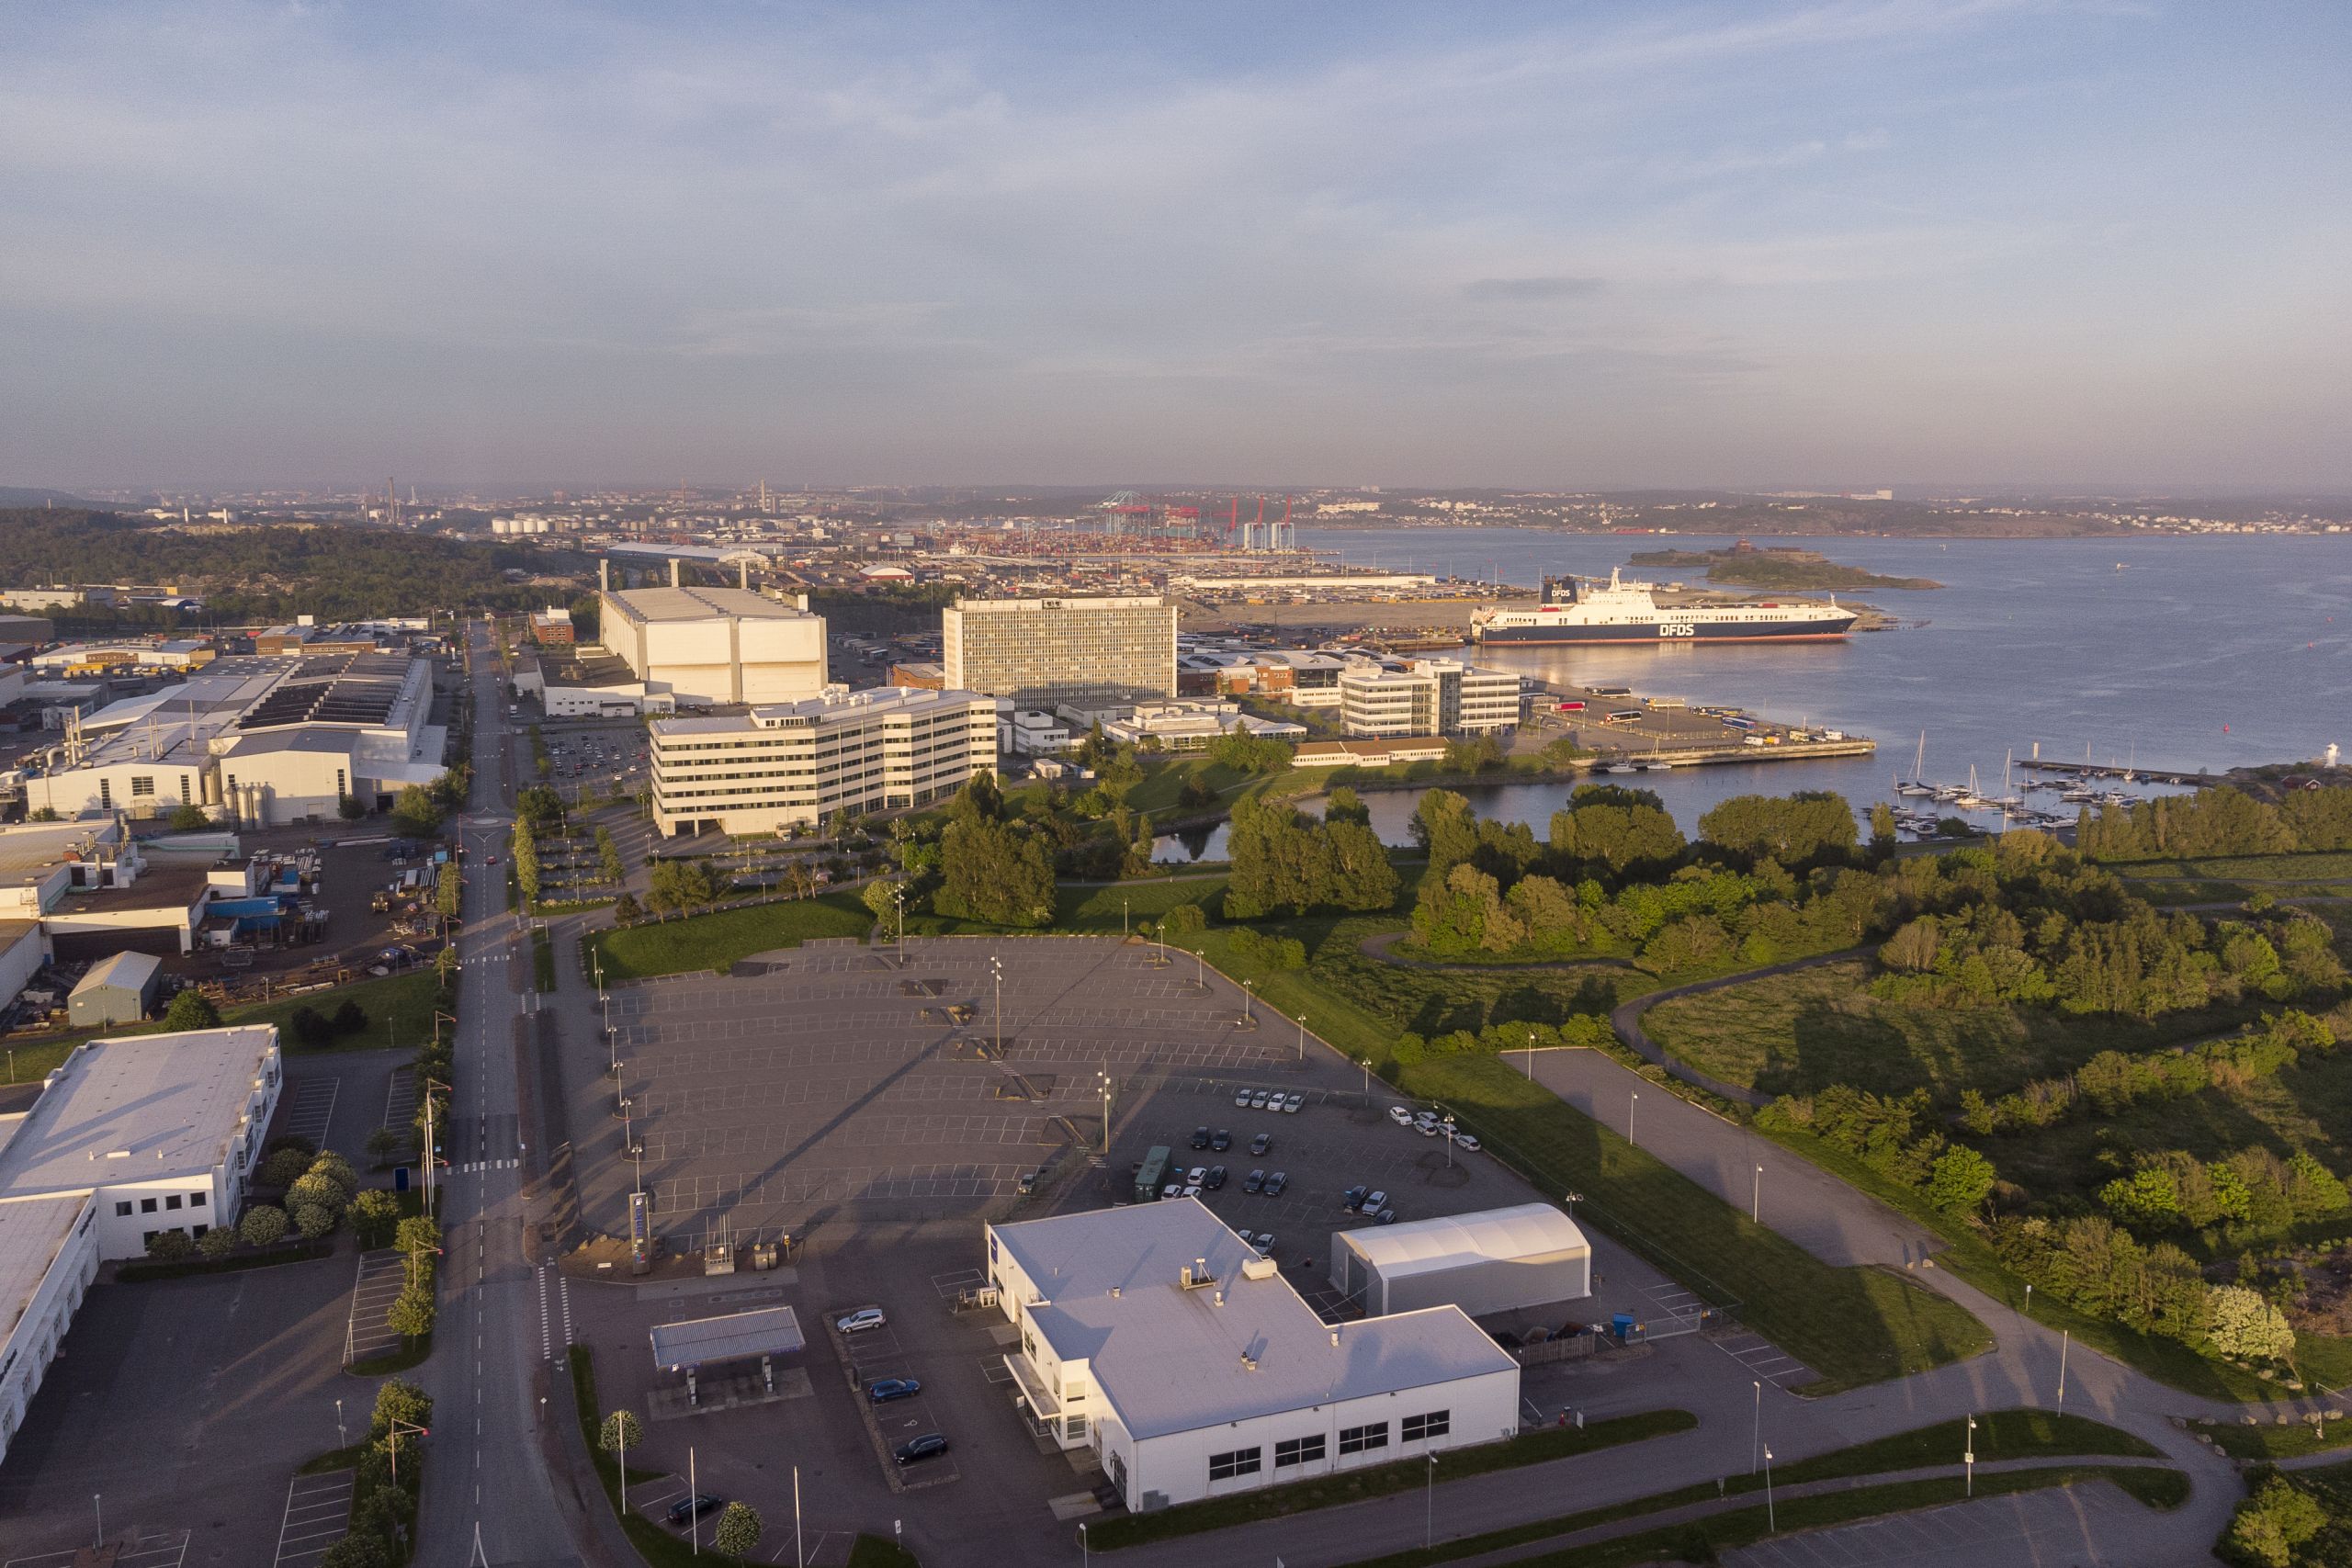 Arendal blir platsen för autonom transportlösning från Volvo Autonomus Solutions